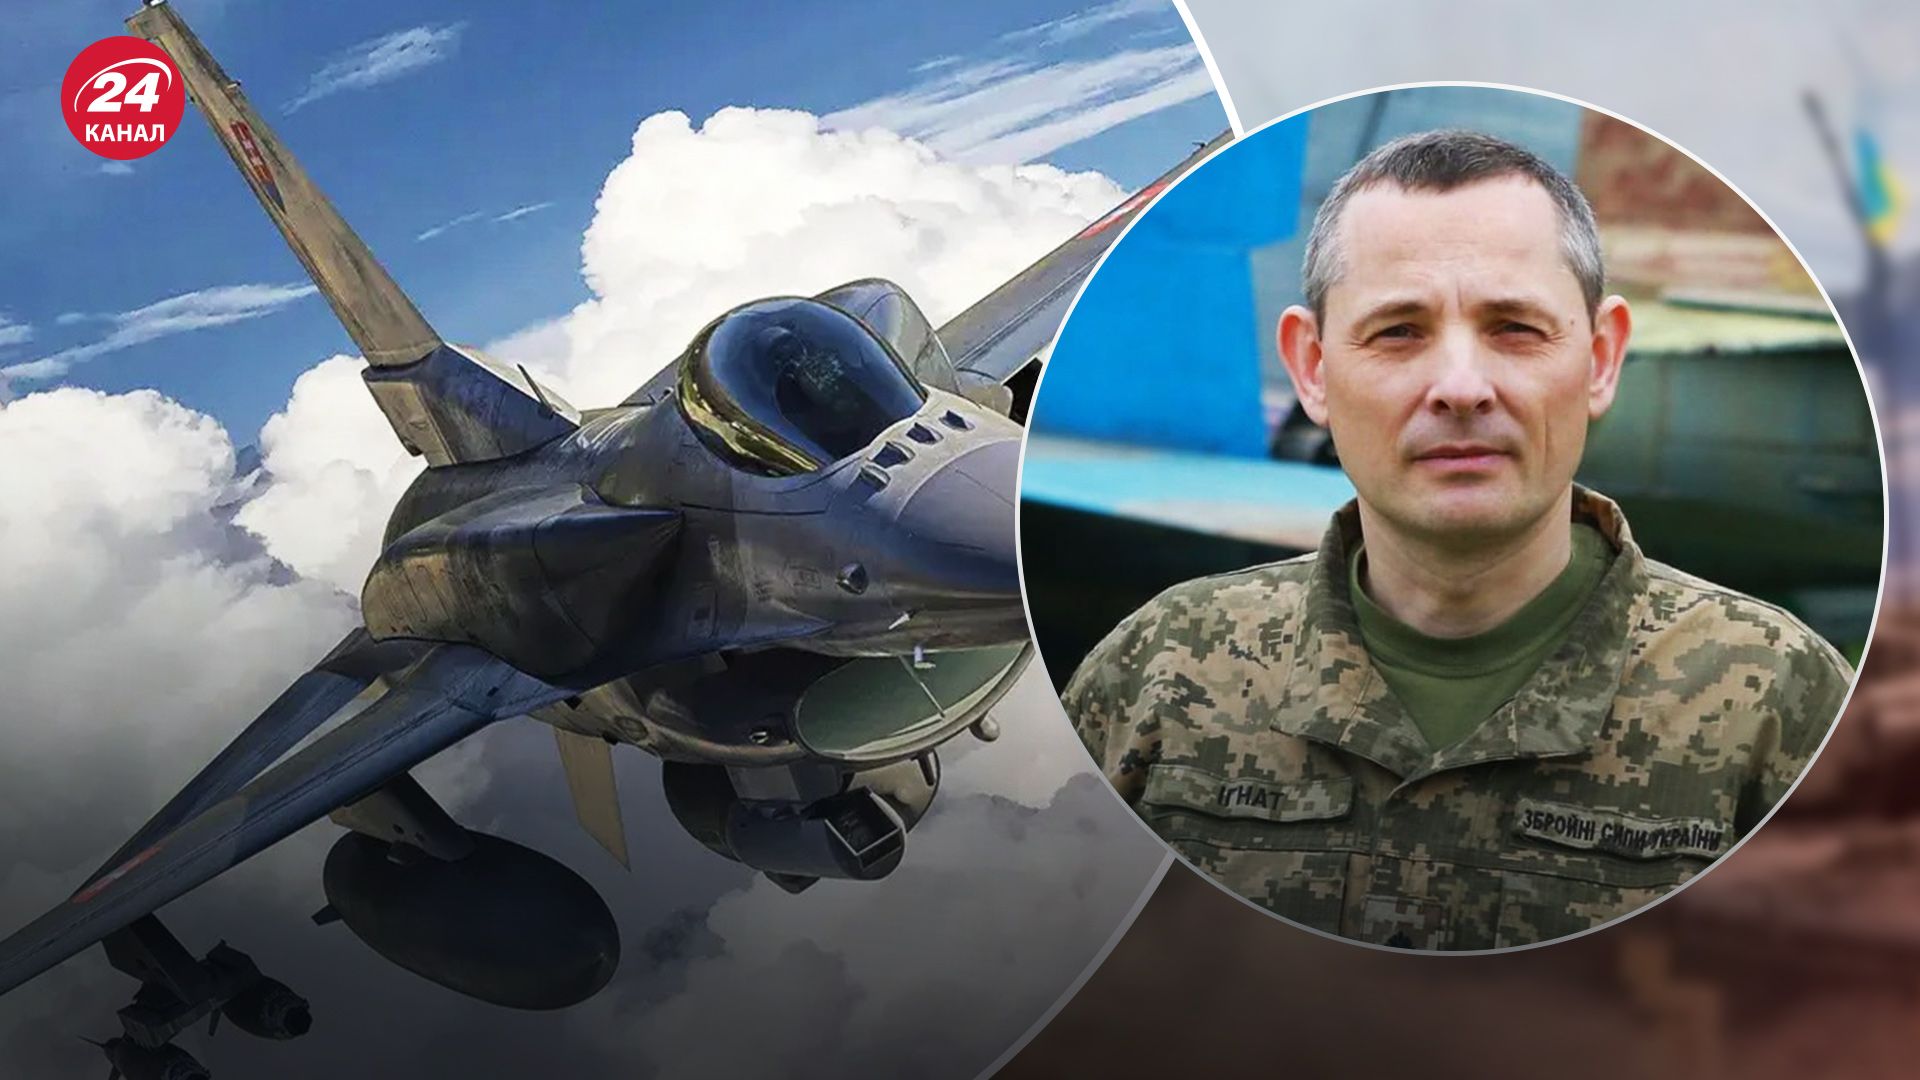 Юрий Игнат сообщил, что украинские пилоты быстро овладеют самолетами F-16.